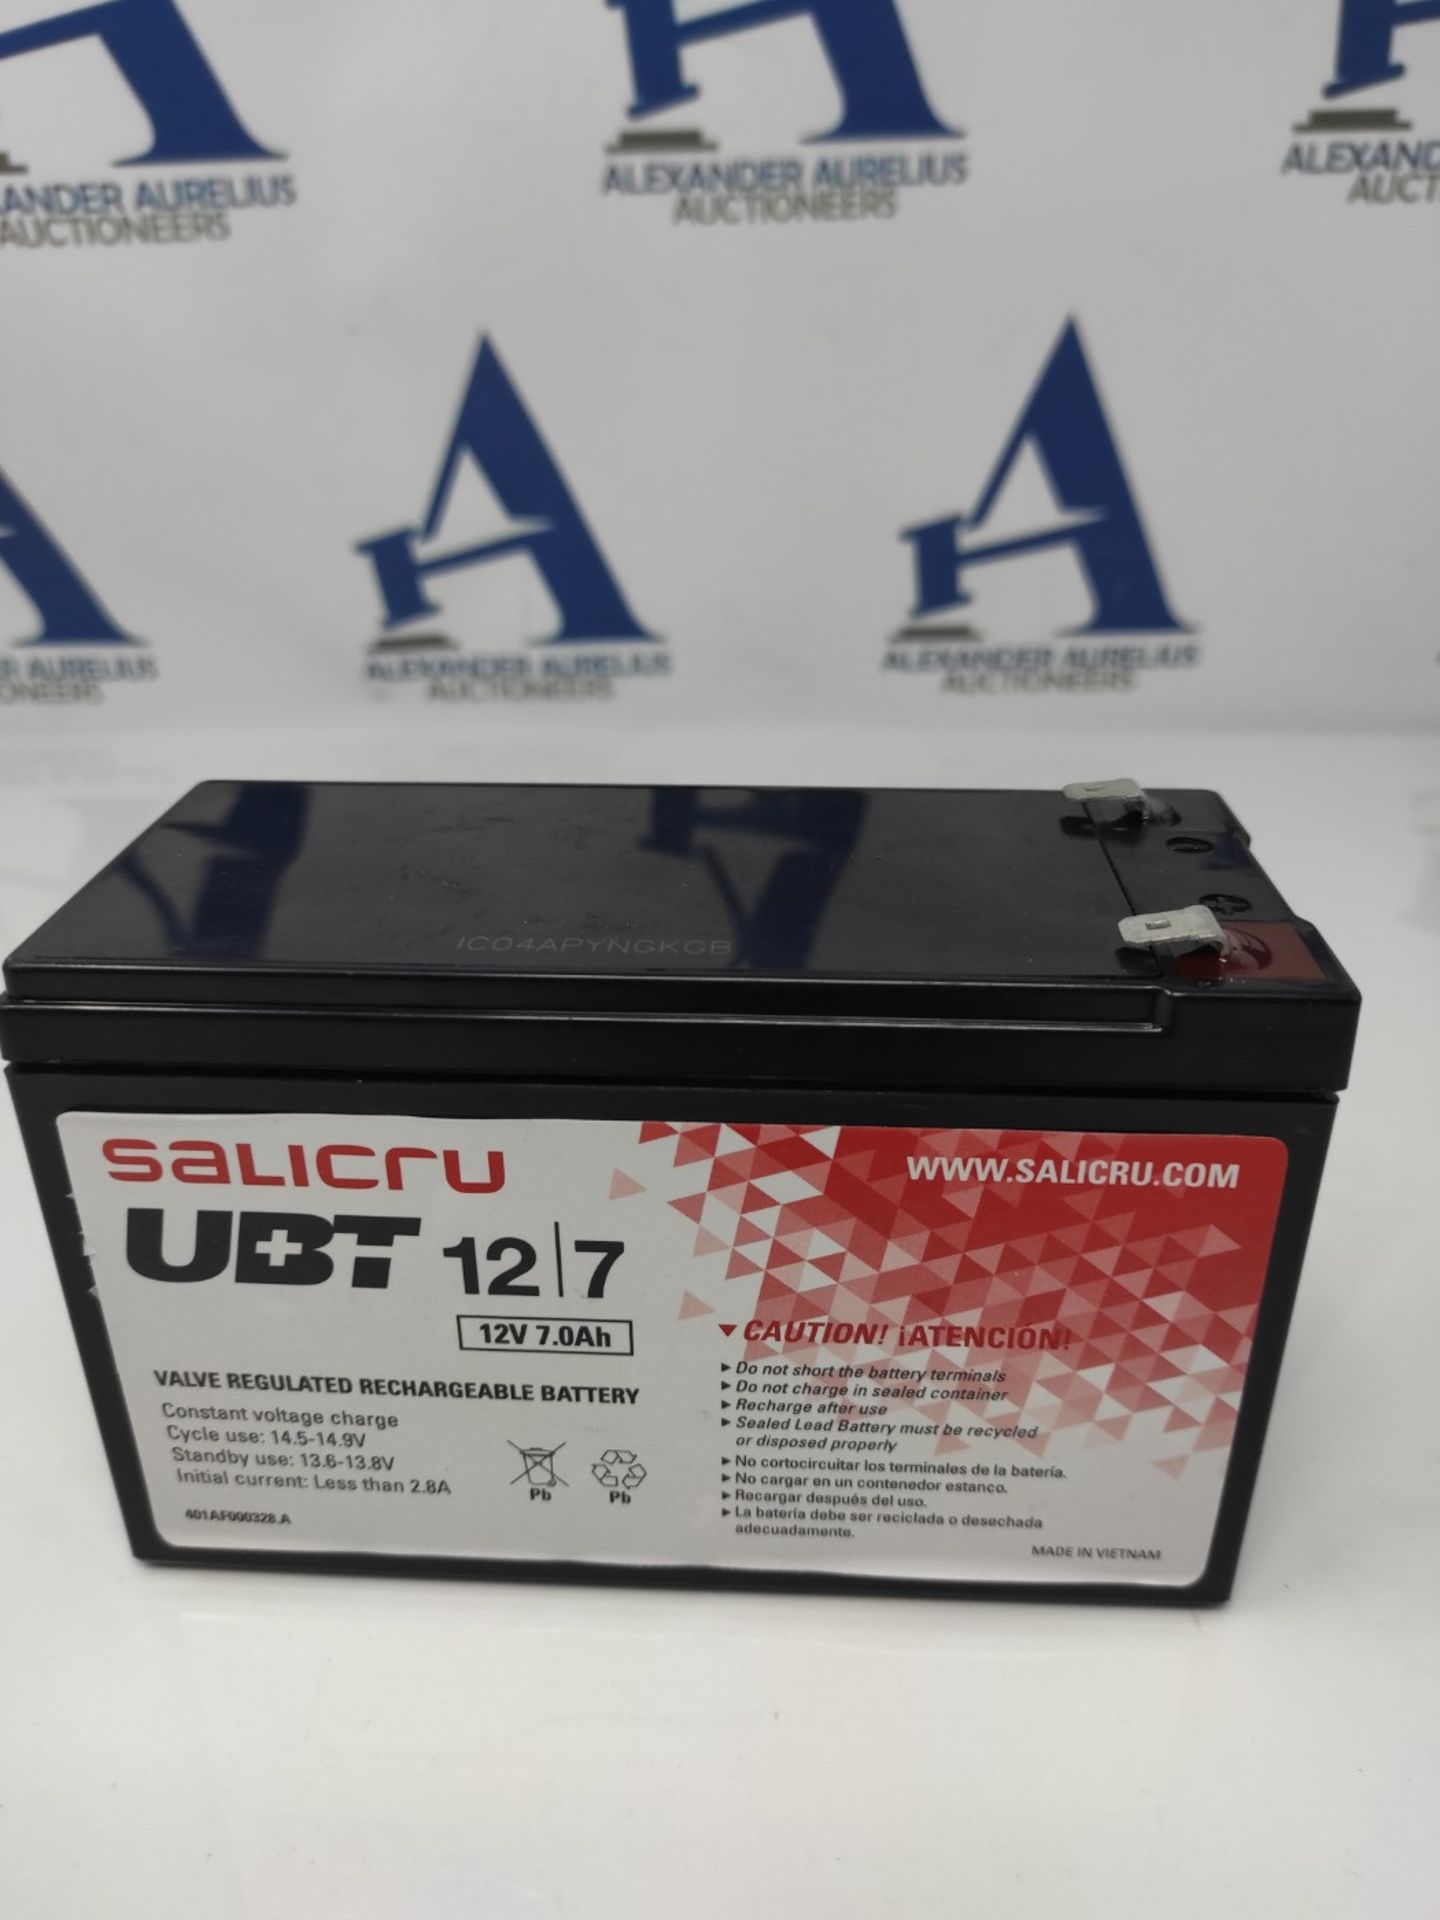 Salicru,UBT 12/7,Black,013BS000001 UBT 12V/7AH Battery - Image 2 of 2